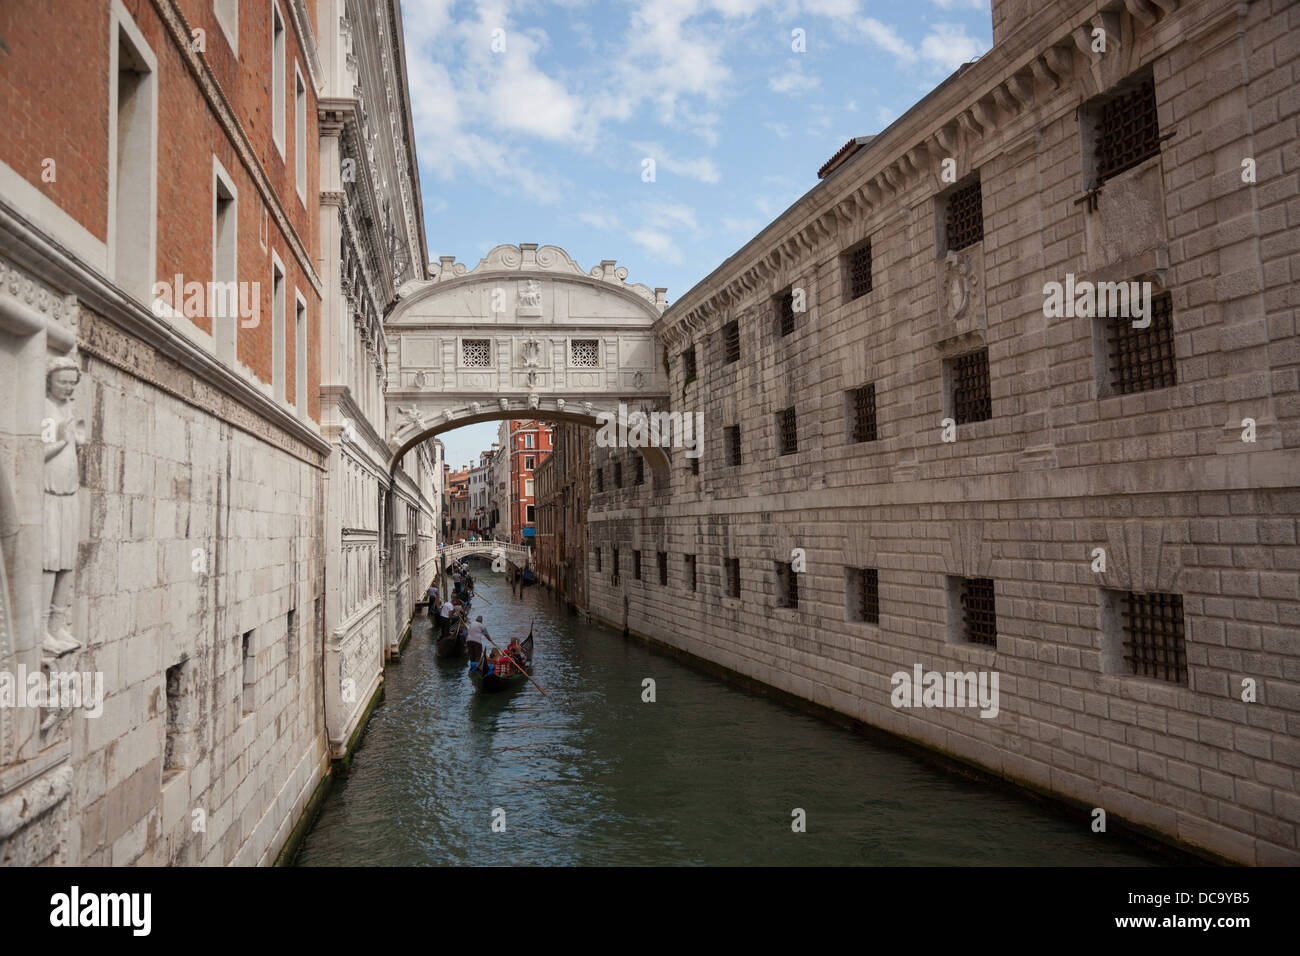 The front view of the Venice's famous Bridge of Sighs (Italy). La vue de face du célèbre Pont des Soupirs, à Venise (Italie). Stock Photo